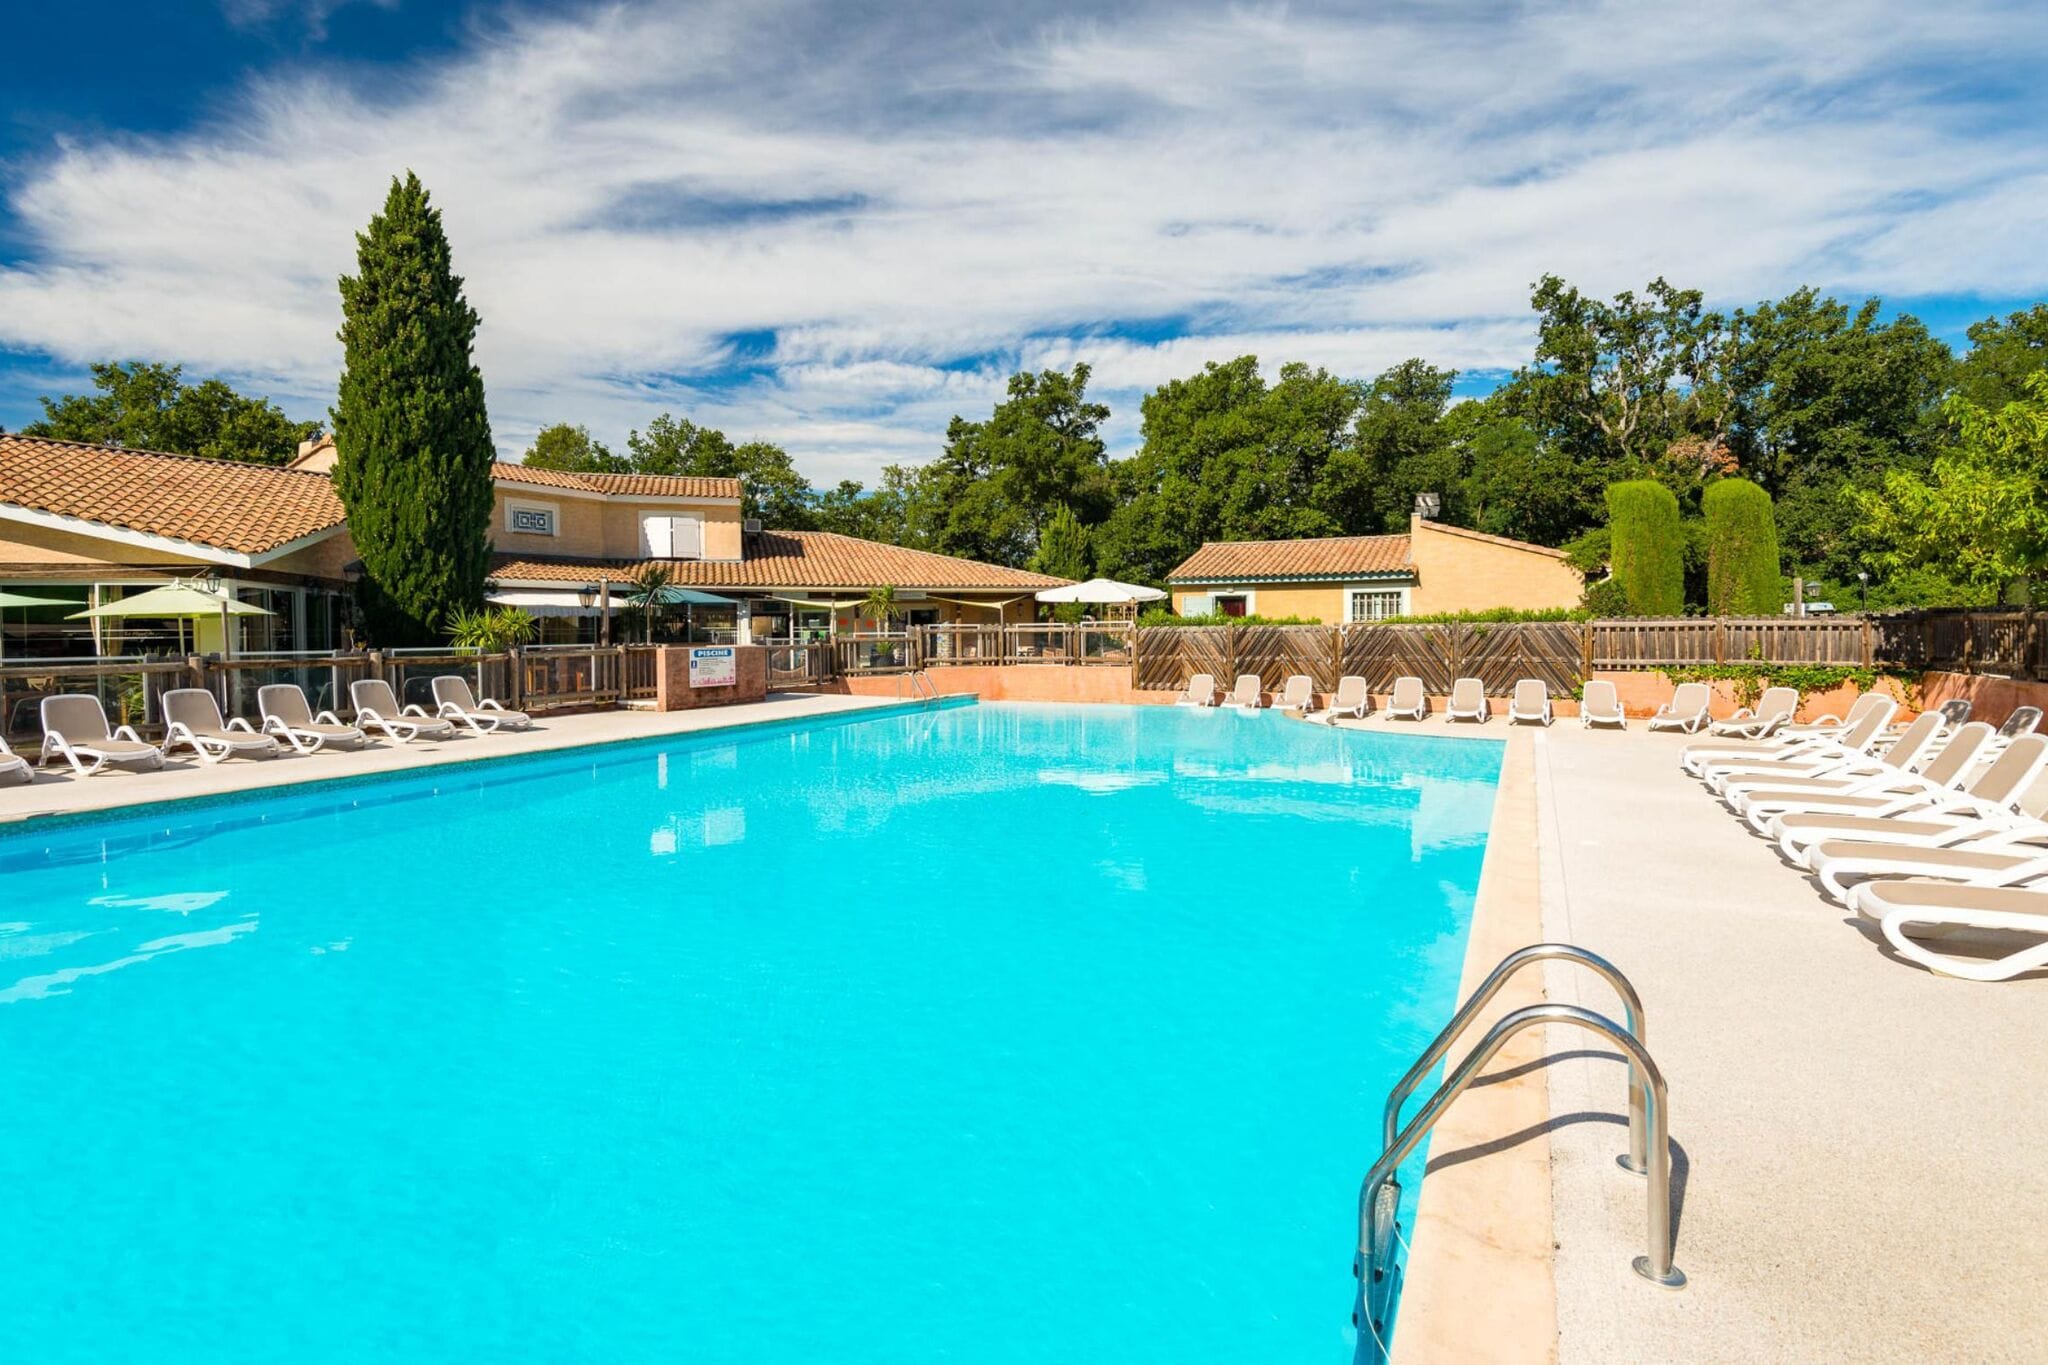 Maisonnette de style provençal avec grande piscine commune